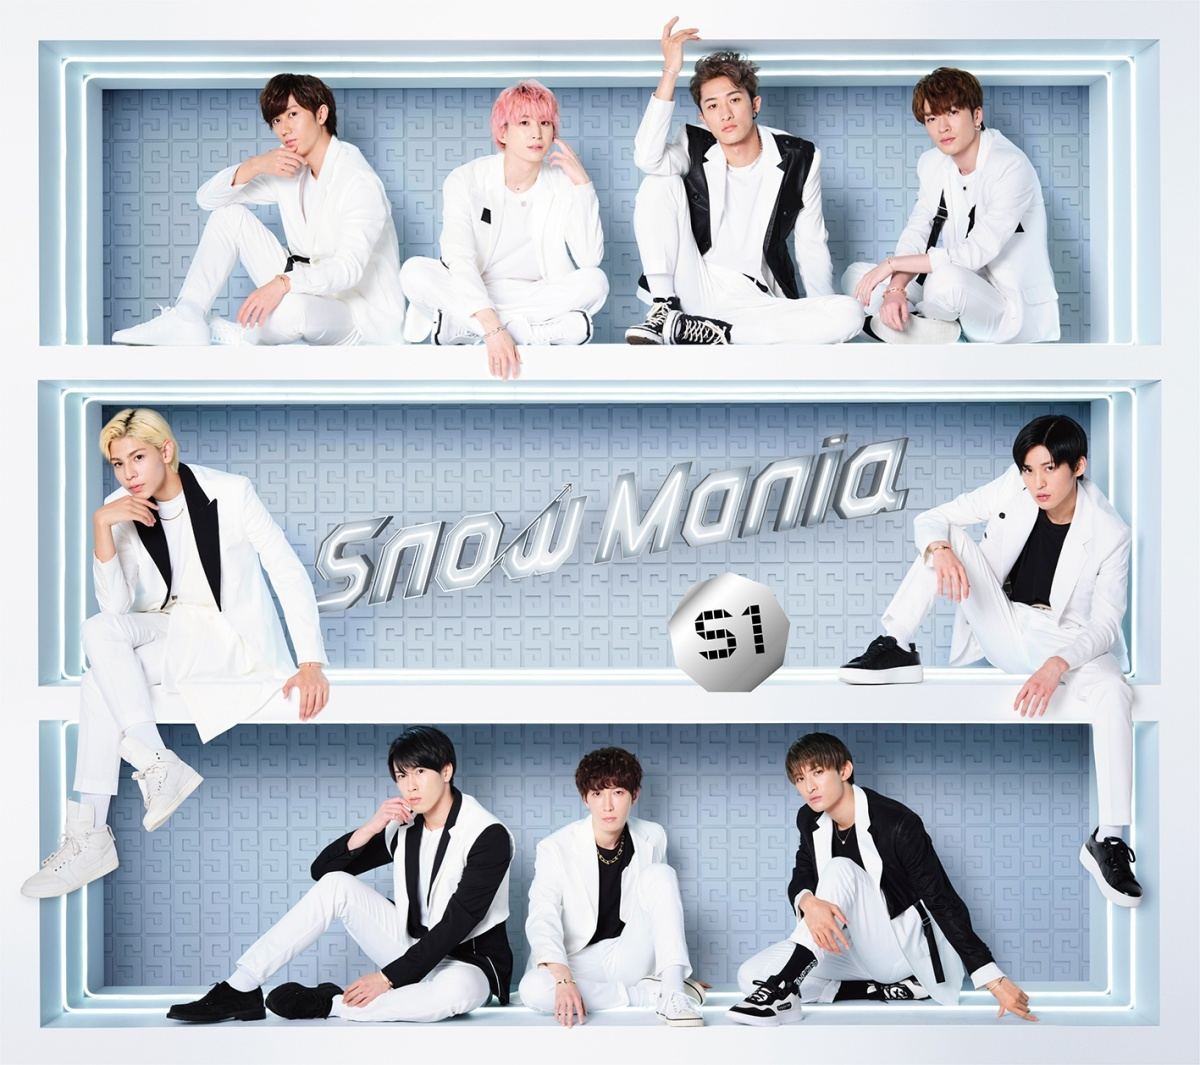 Snow Man 1stアルバムでjr 時代の楽曲を初cd化 初のユニット曲も収録 マイナビニュース